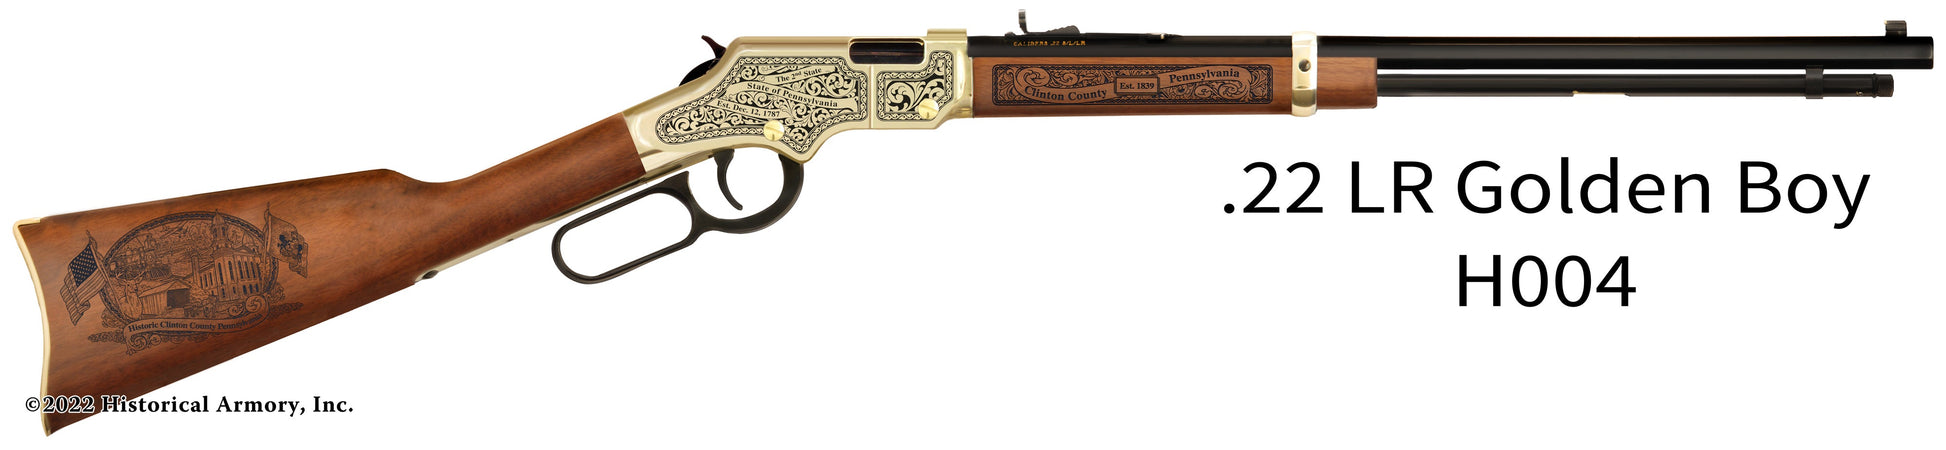 Clinton County Pennsylvania Engraved Henry Golden Boy Rifle